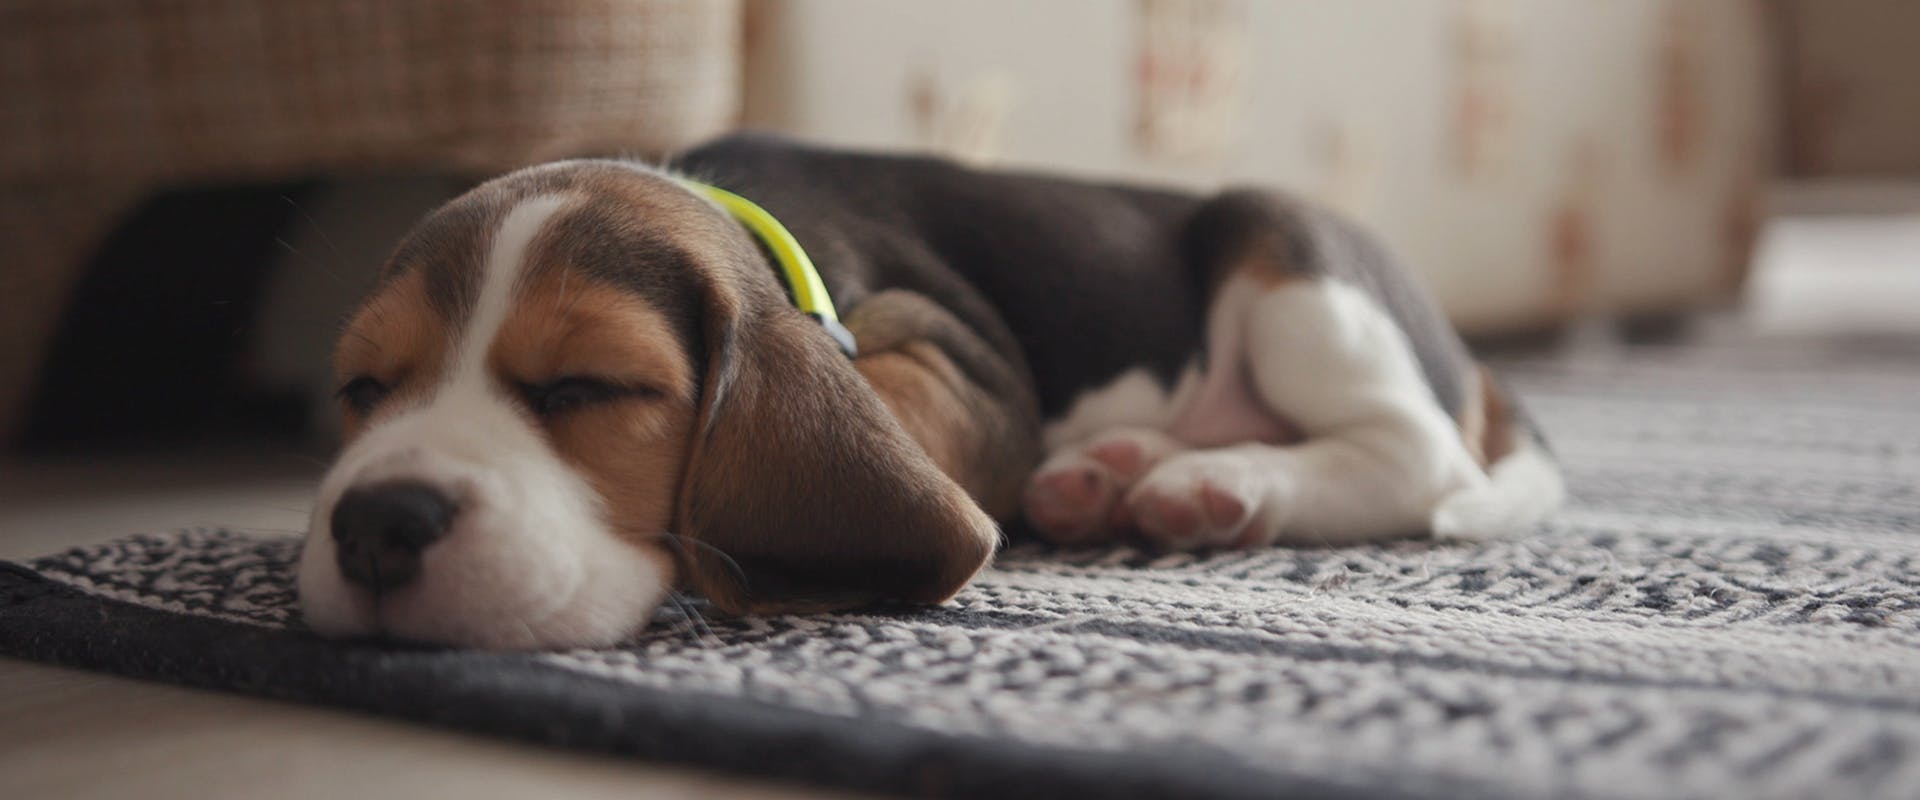 A cute Beagle puppy sleeping on a rug